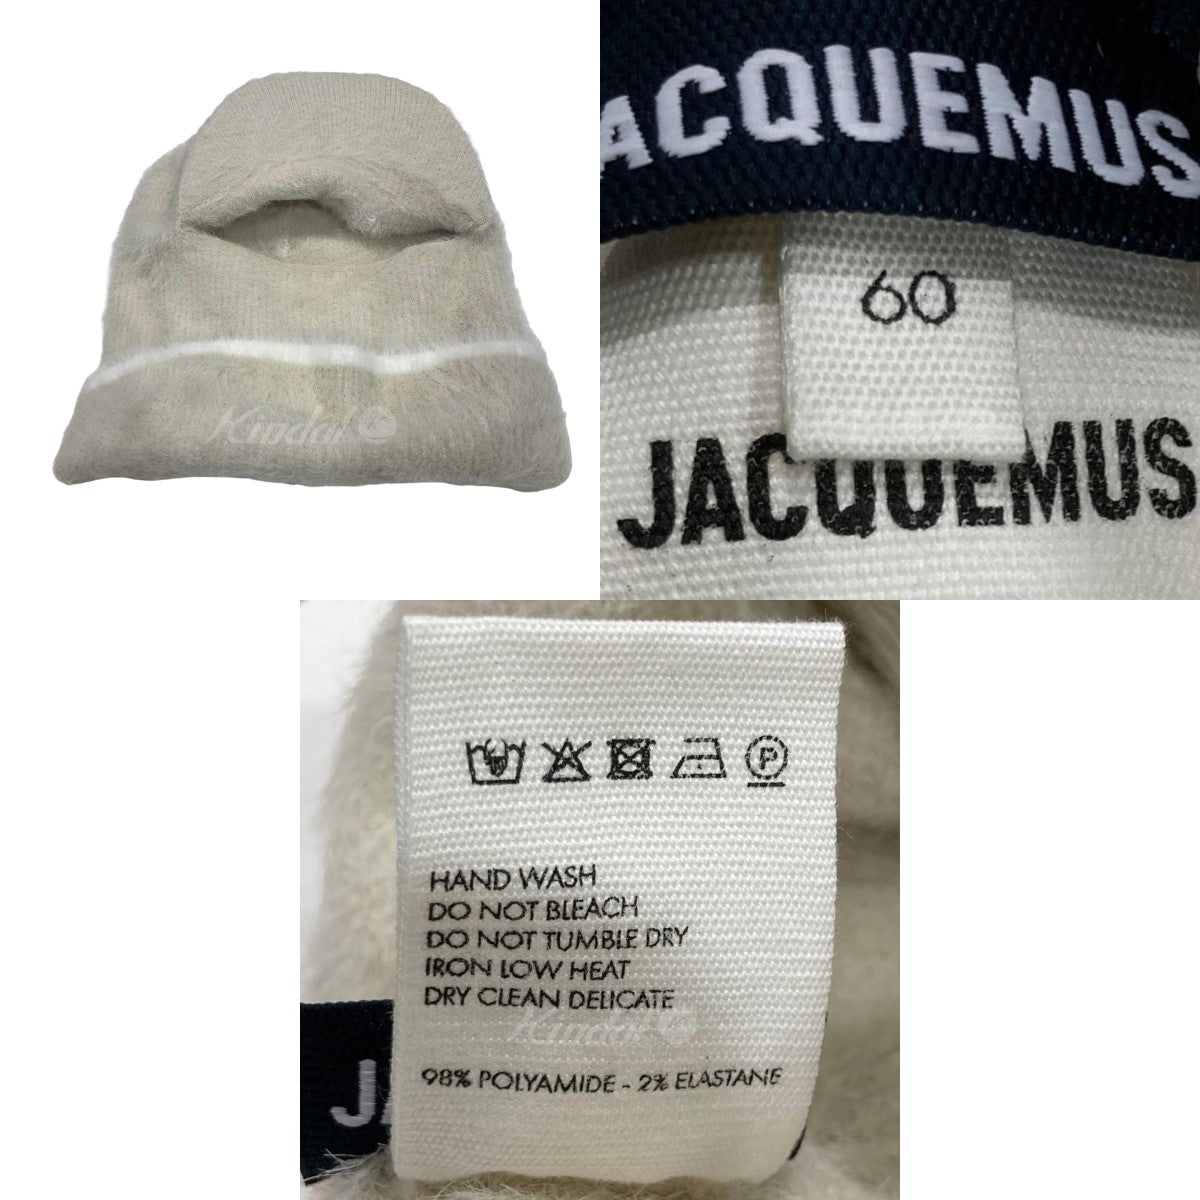 JACQUEMUS(ジャックムス) ｢La Cagoule Casquette｣バラクラバ